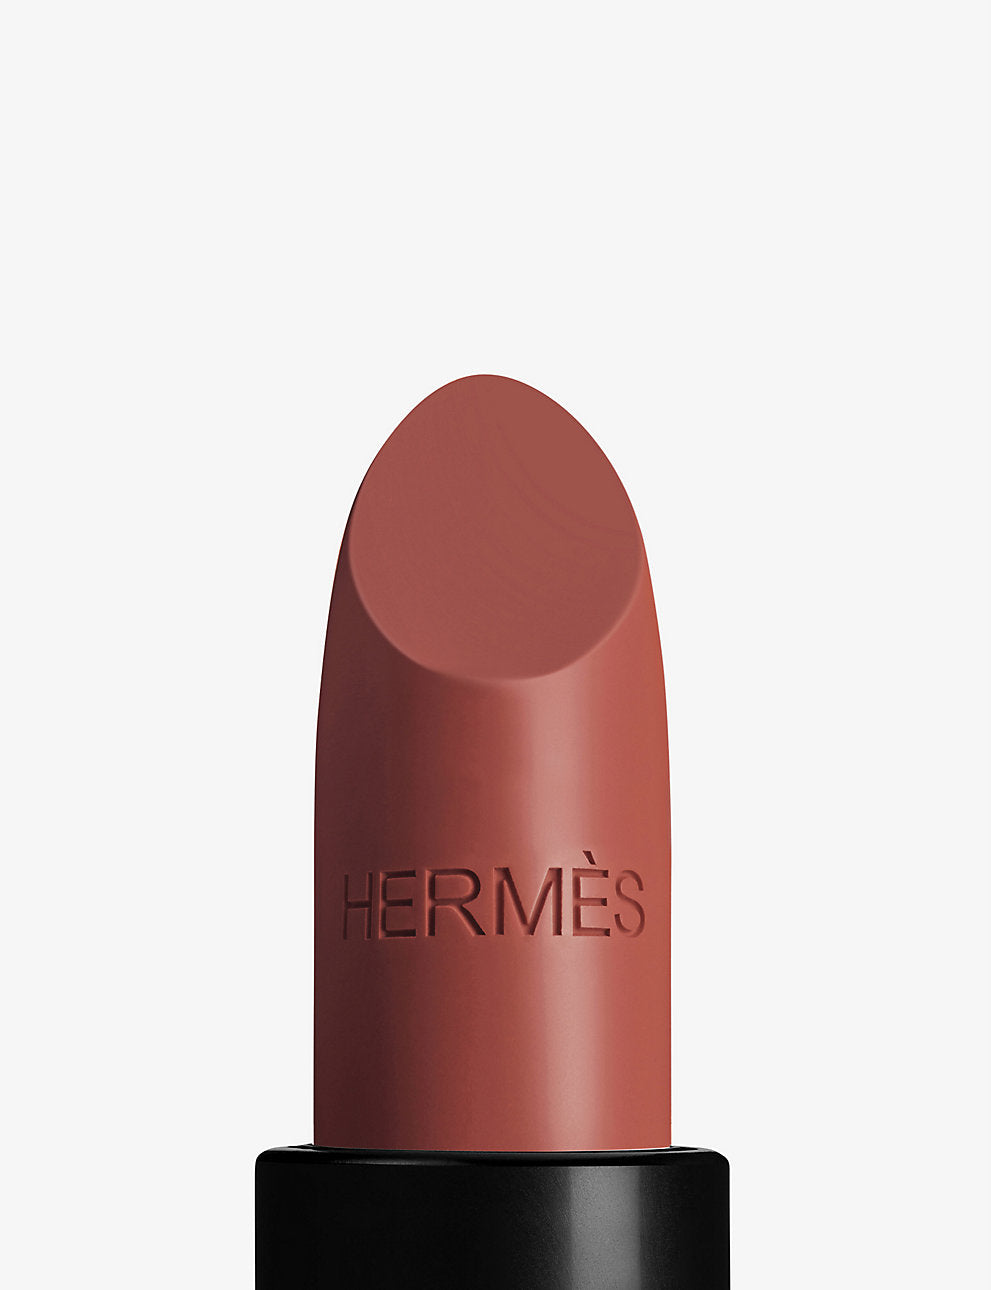 HERMES Rouge Hermès limited-edition sheer lipstick 3.5g, En caso de que aún no te hayas enterado